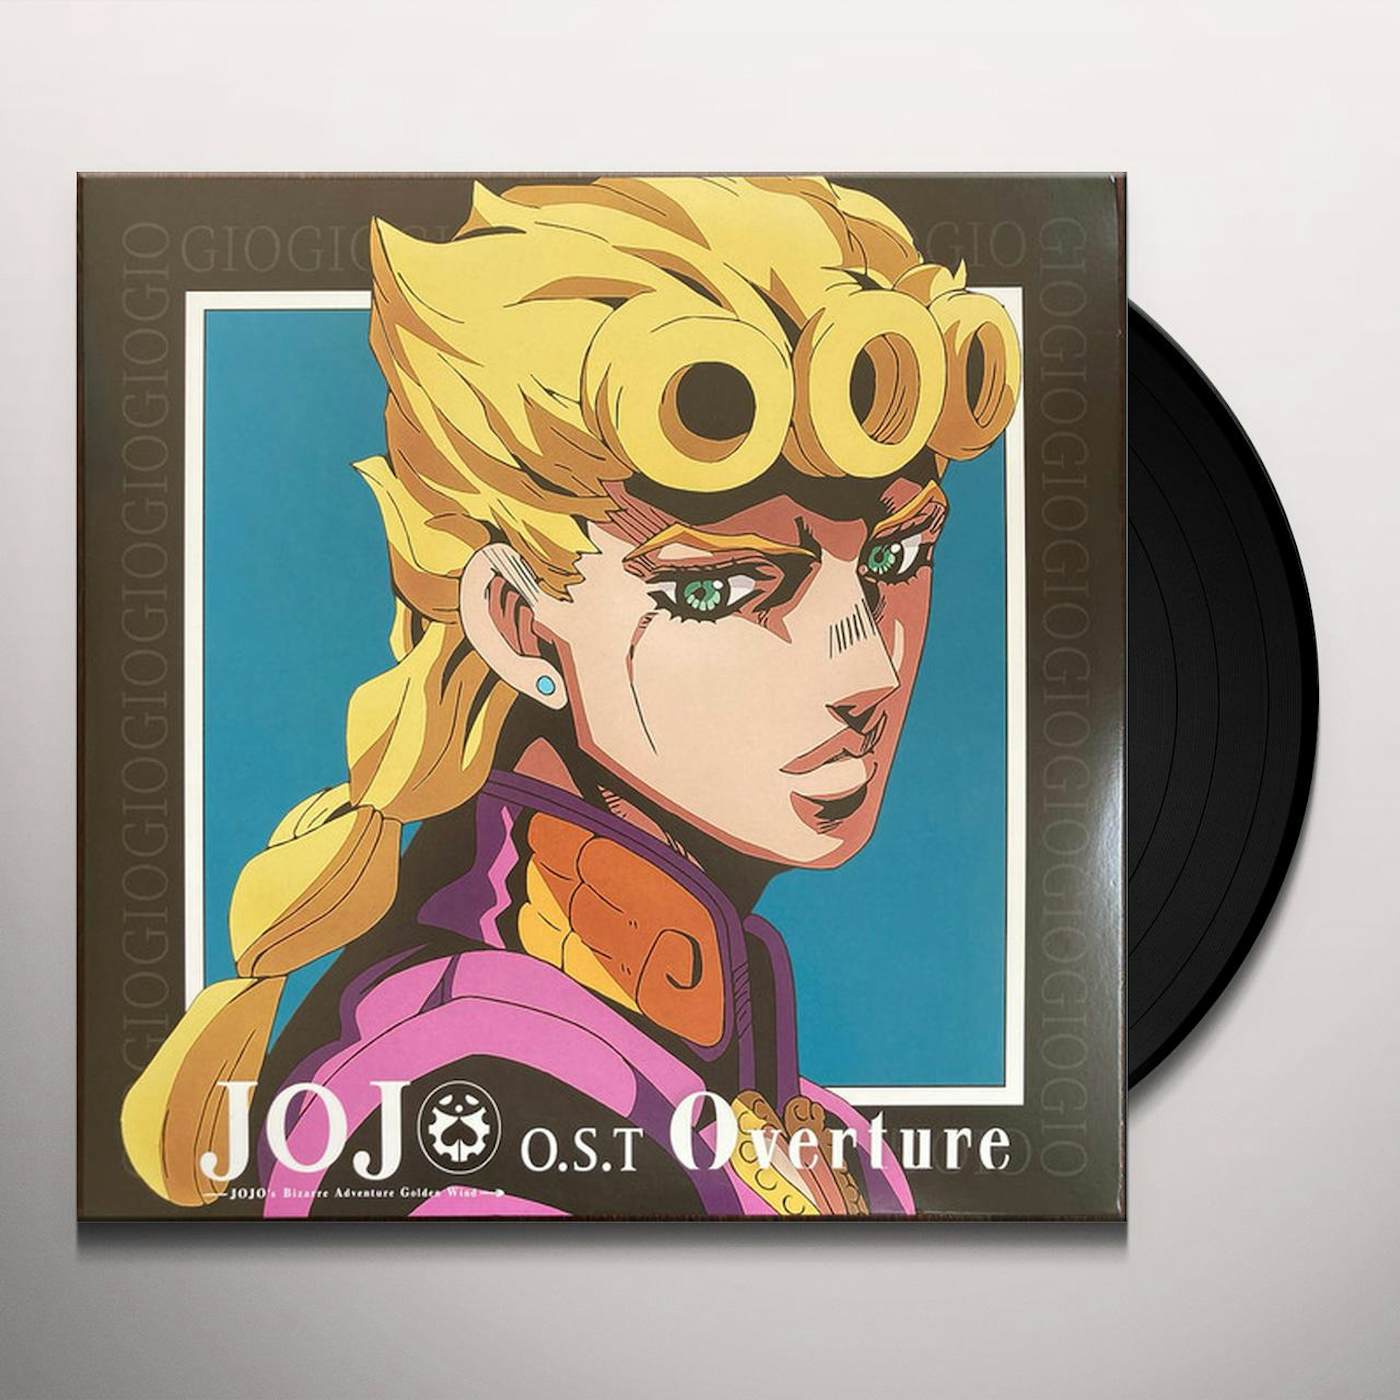 JoJo's Bizarre Adventure: Golden Wind Vinyl OST